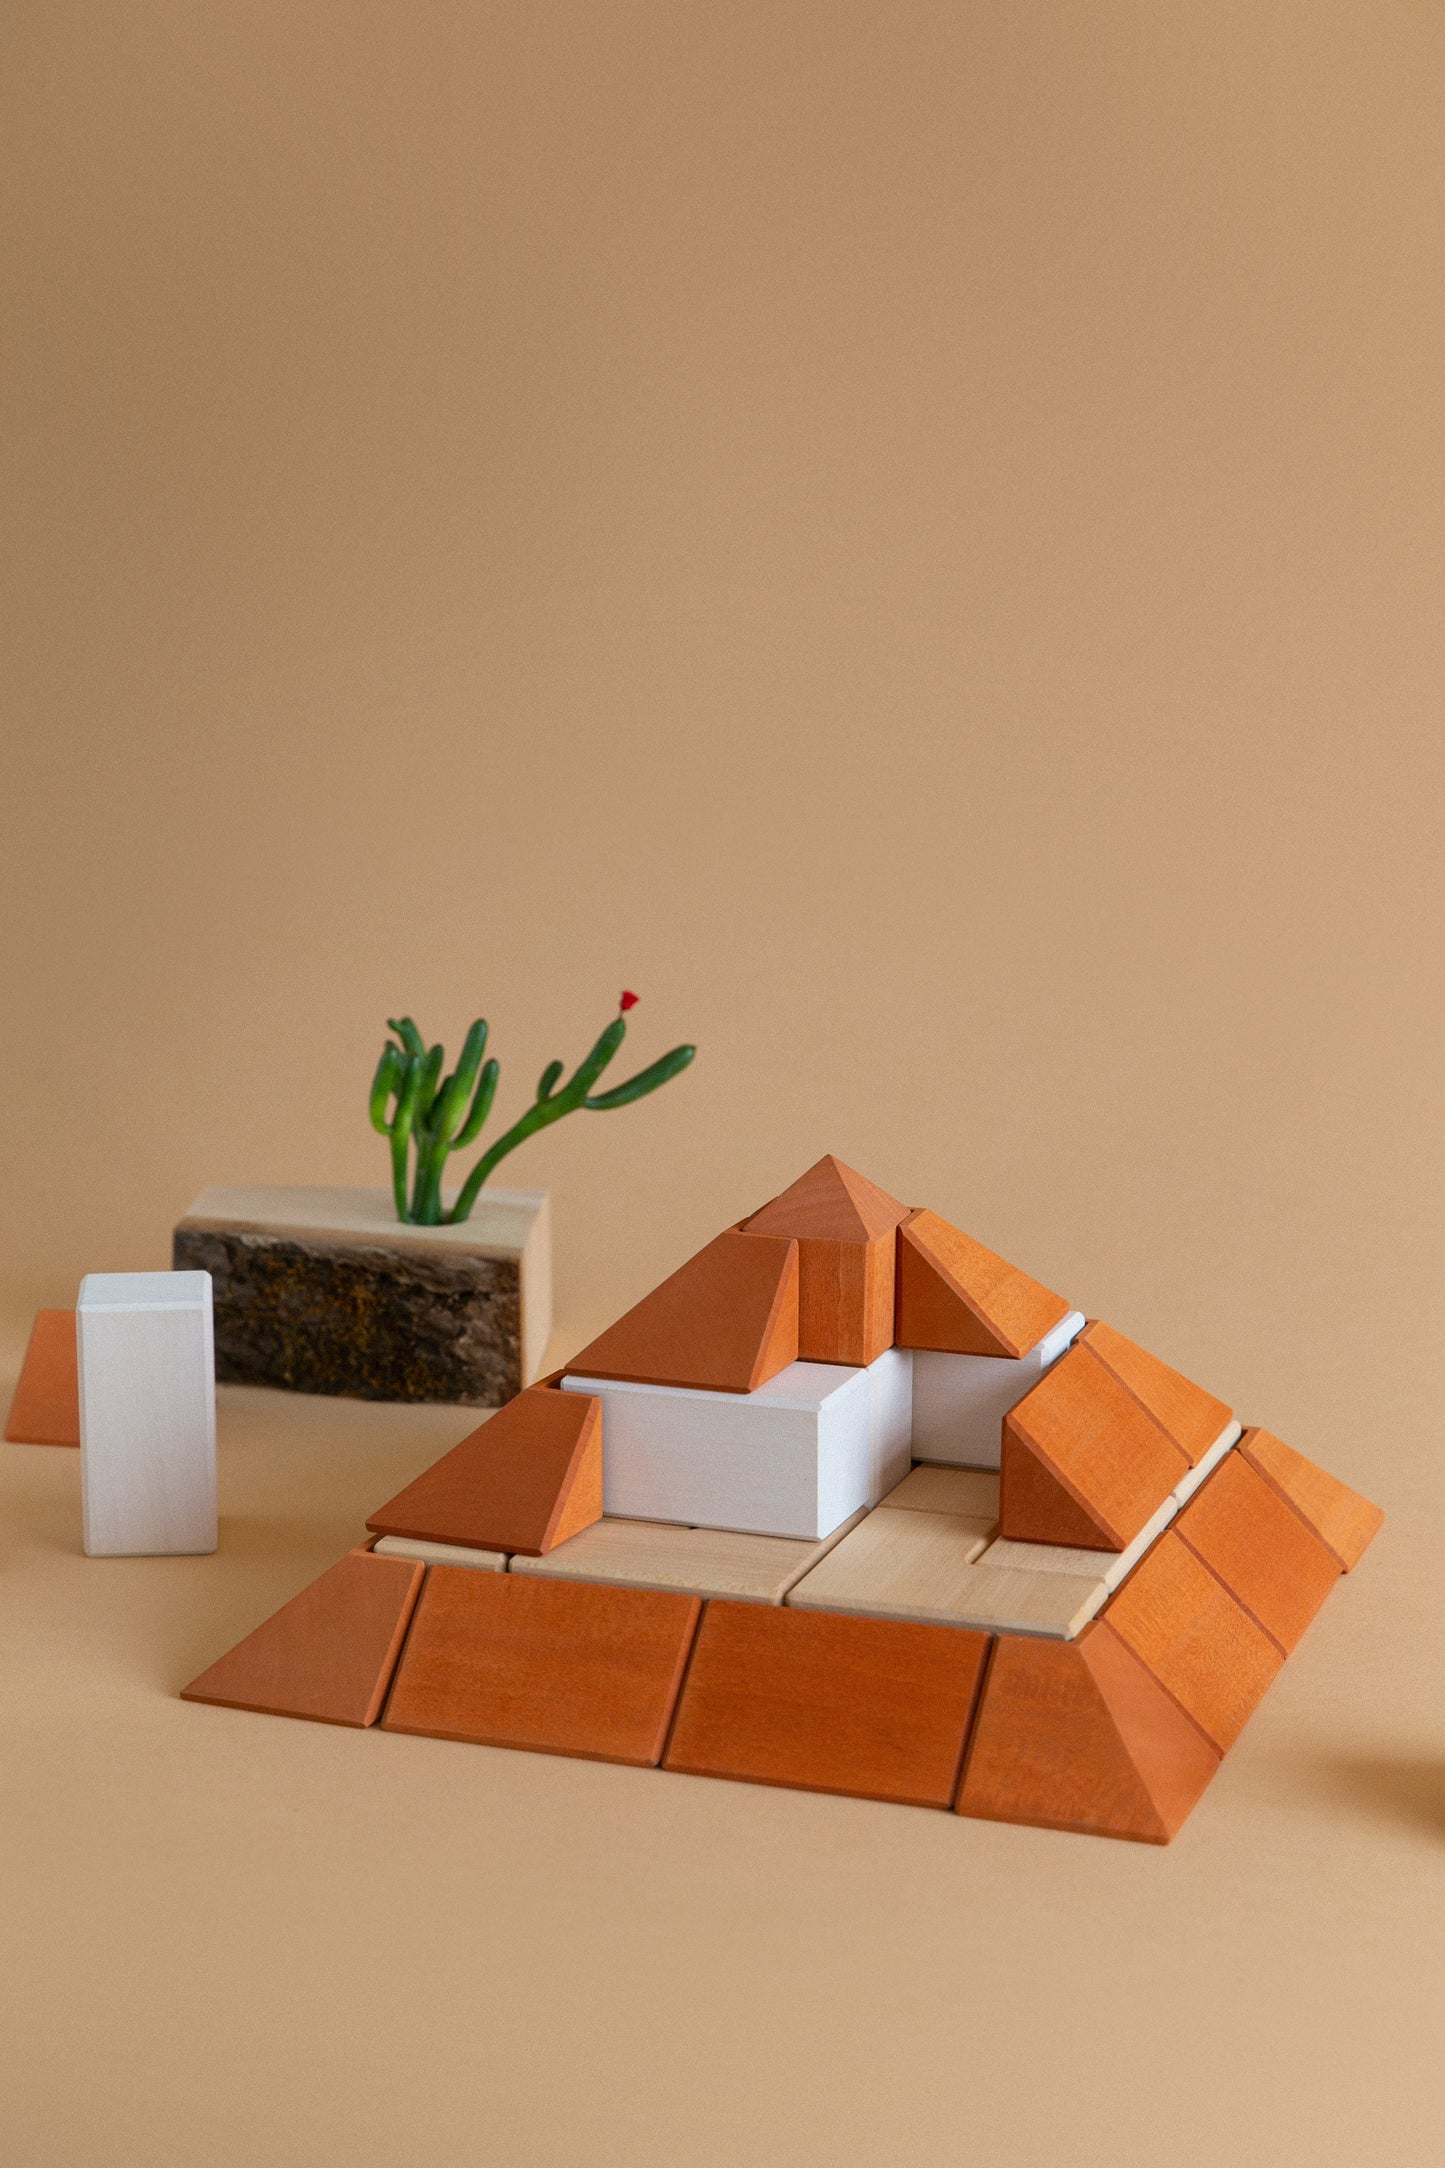 Pyramid Block Set by Avdar